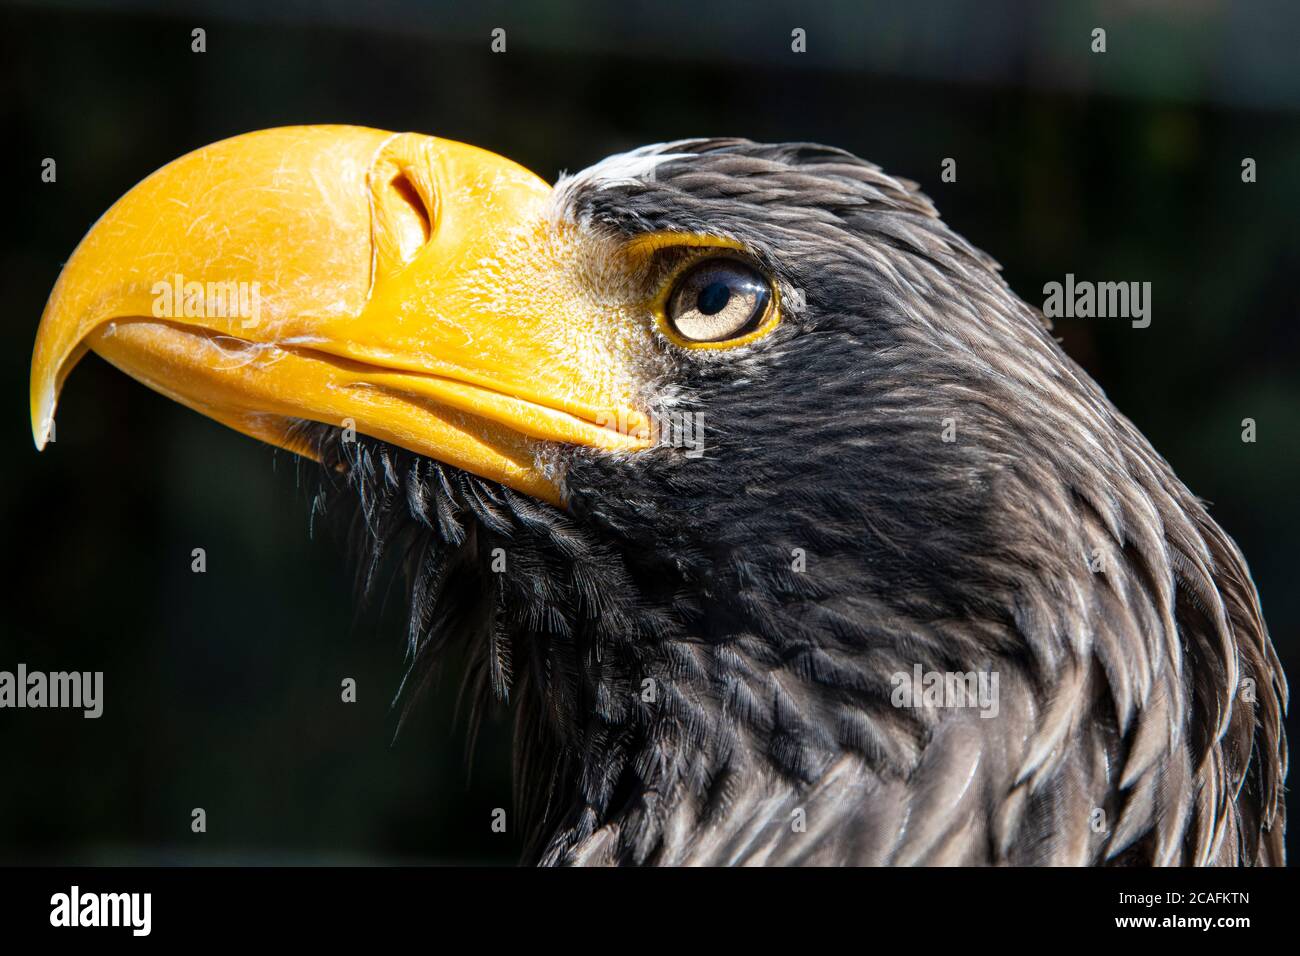 Seitenansicht in Nahaufnahme eines Adlers mit gelbem Schnabel und dunklen Federn Stockfoto